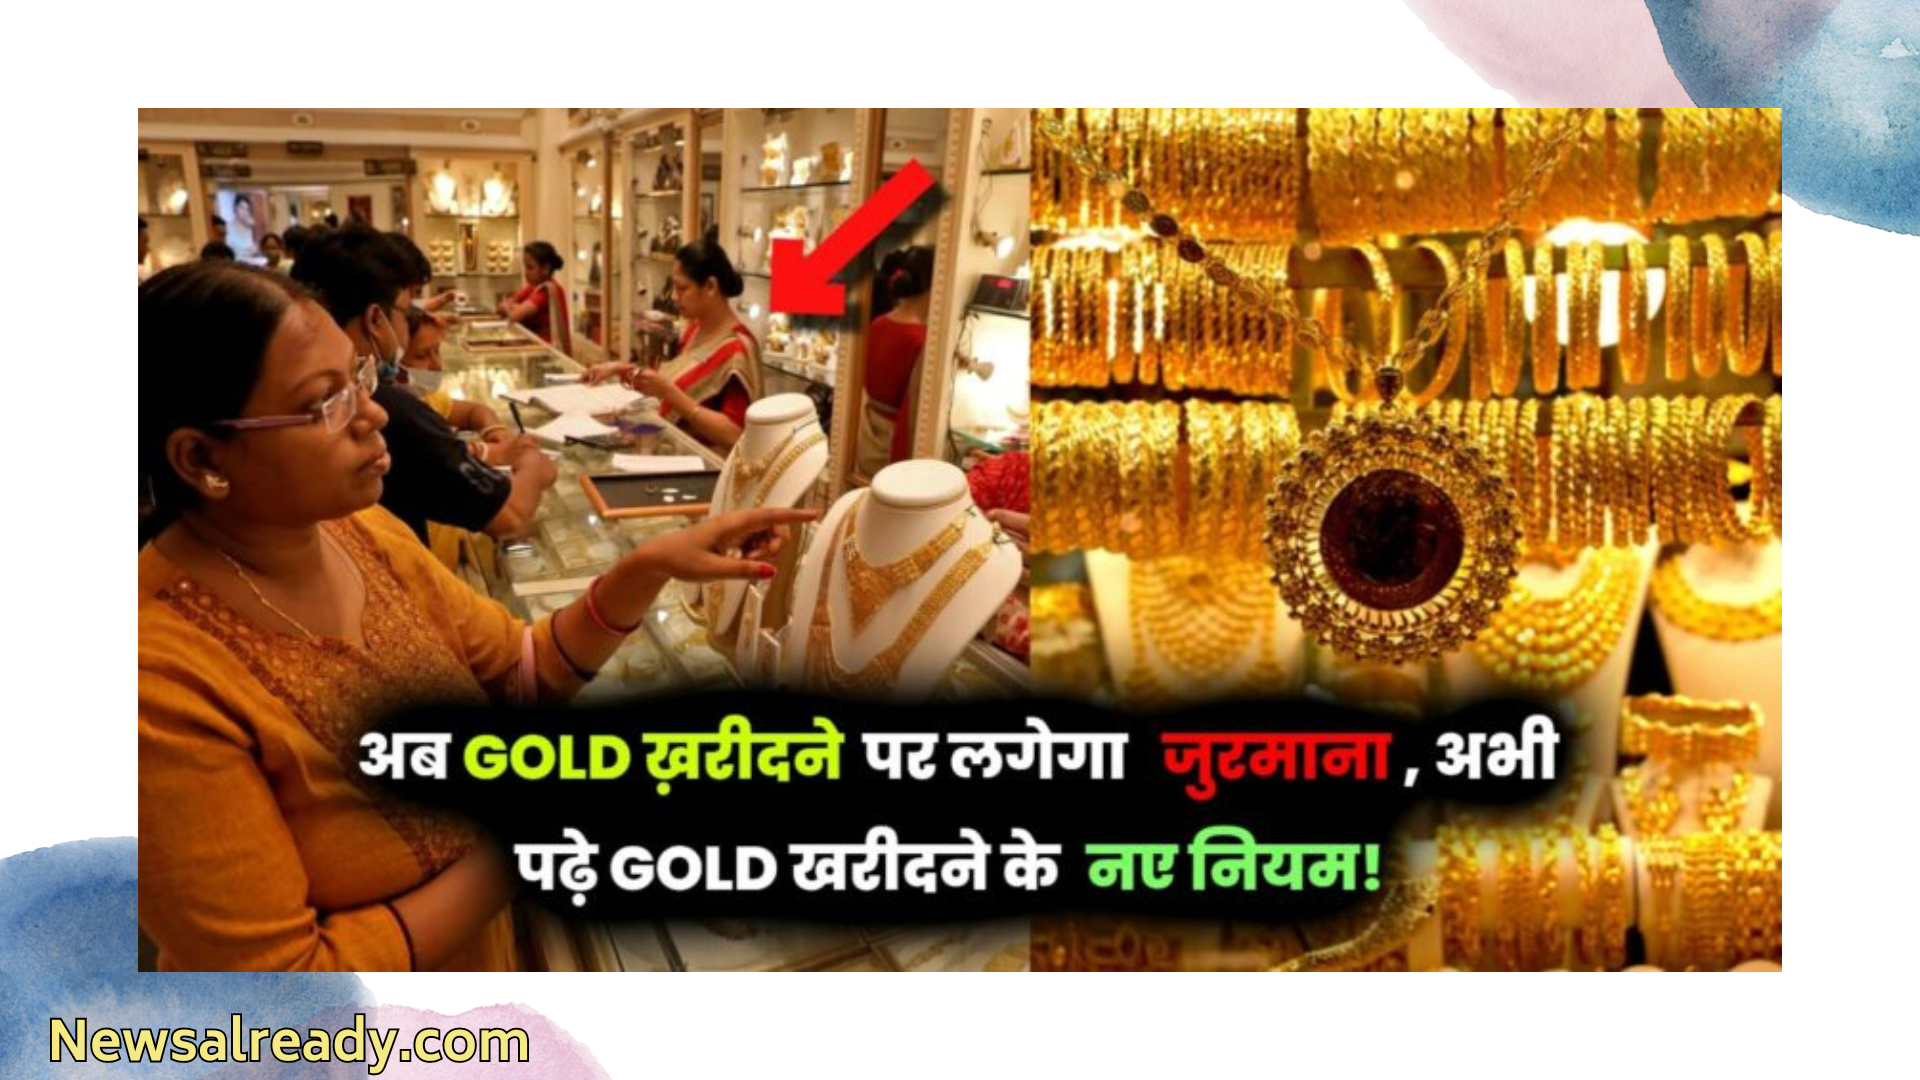 आप नकदी से कितना सोना खरीद सकते हैं? जान लें नियम, नहीं तो होगा बड़ा नुकसान!